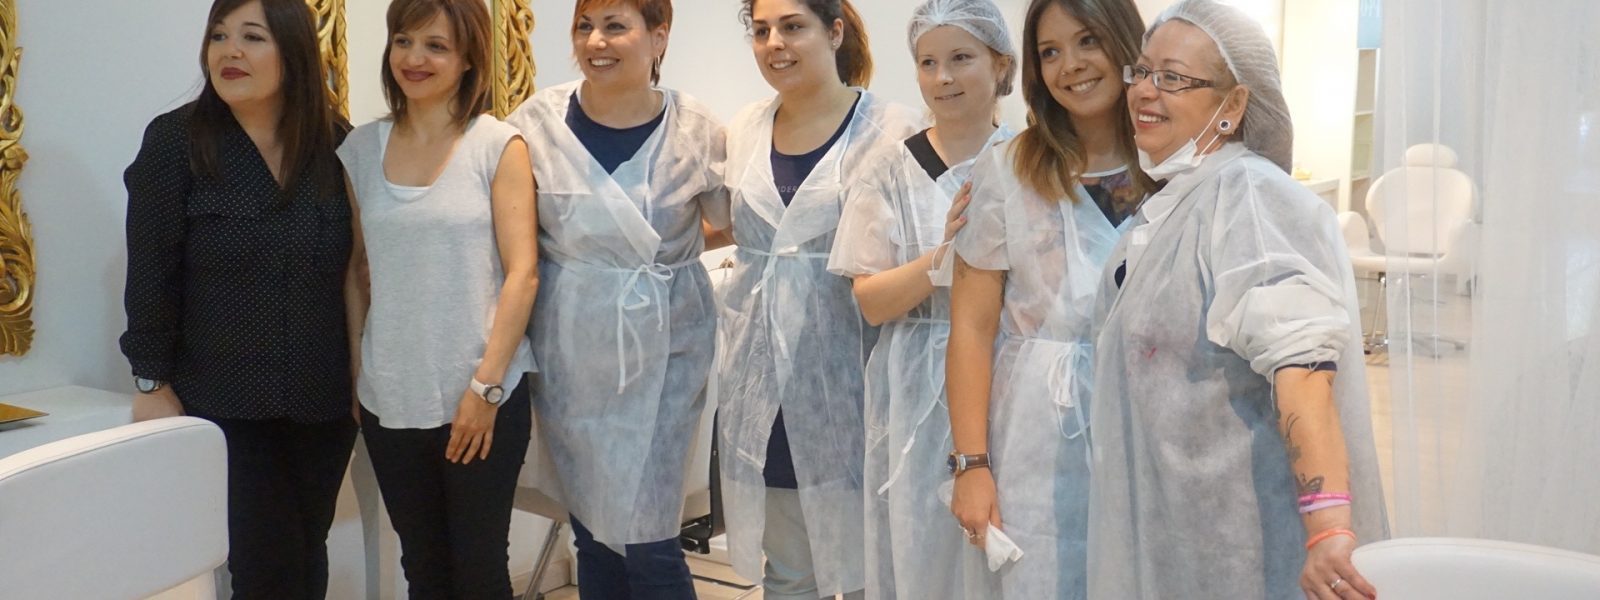 Clase demostración de micropigmentación de labios a cinco alumnas del I.E.S Espallargas de Tarragona